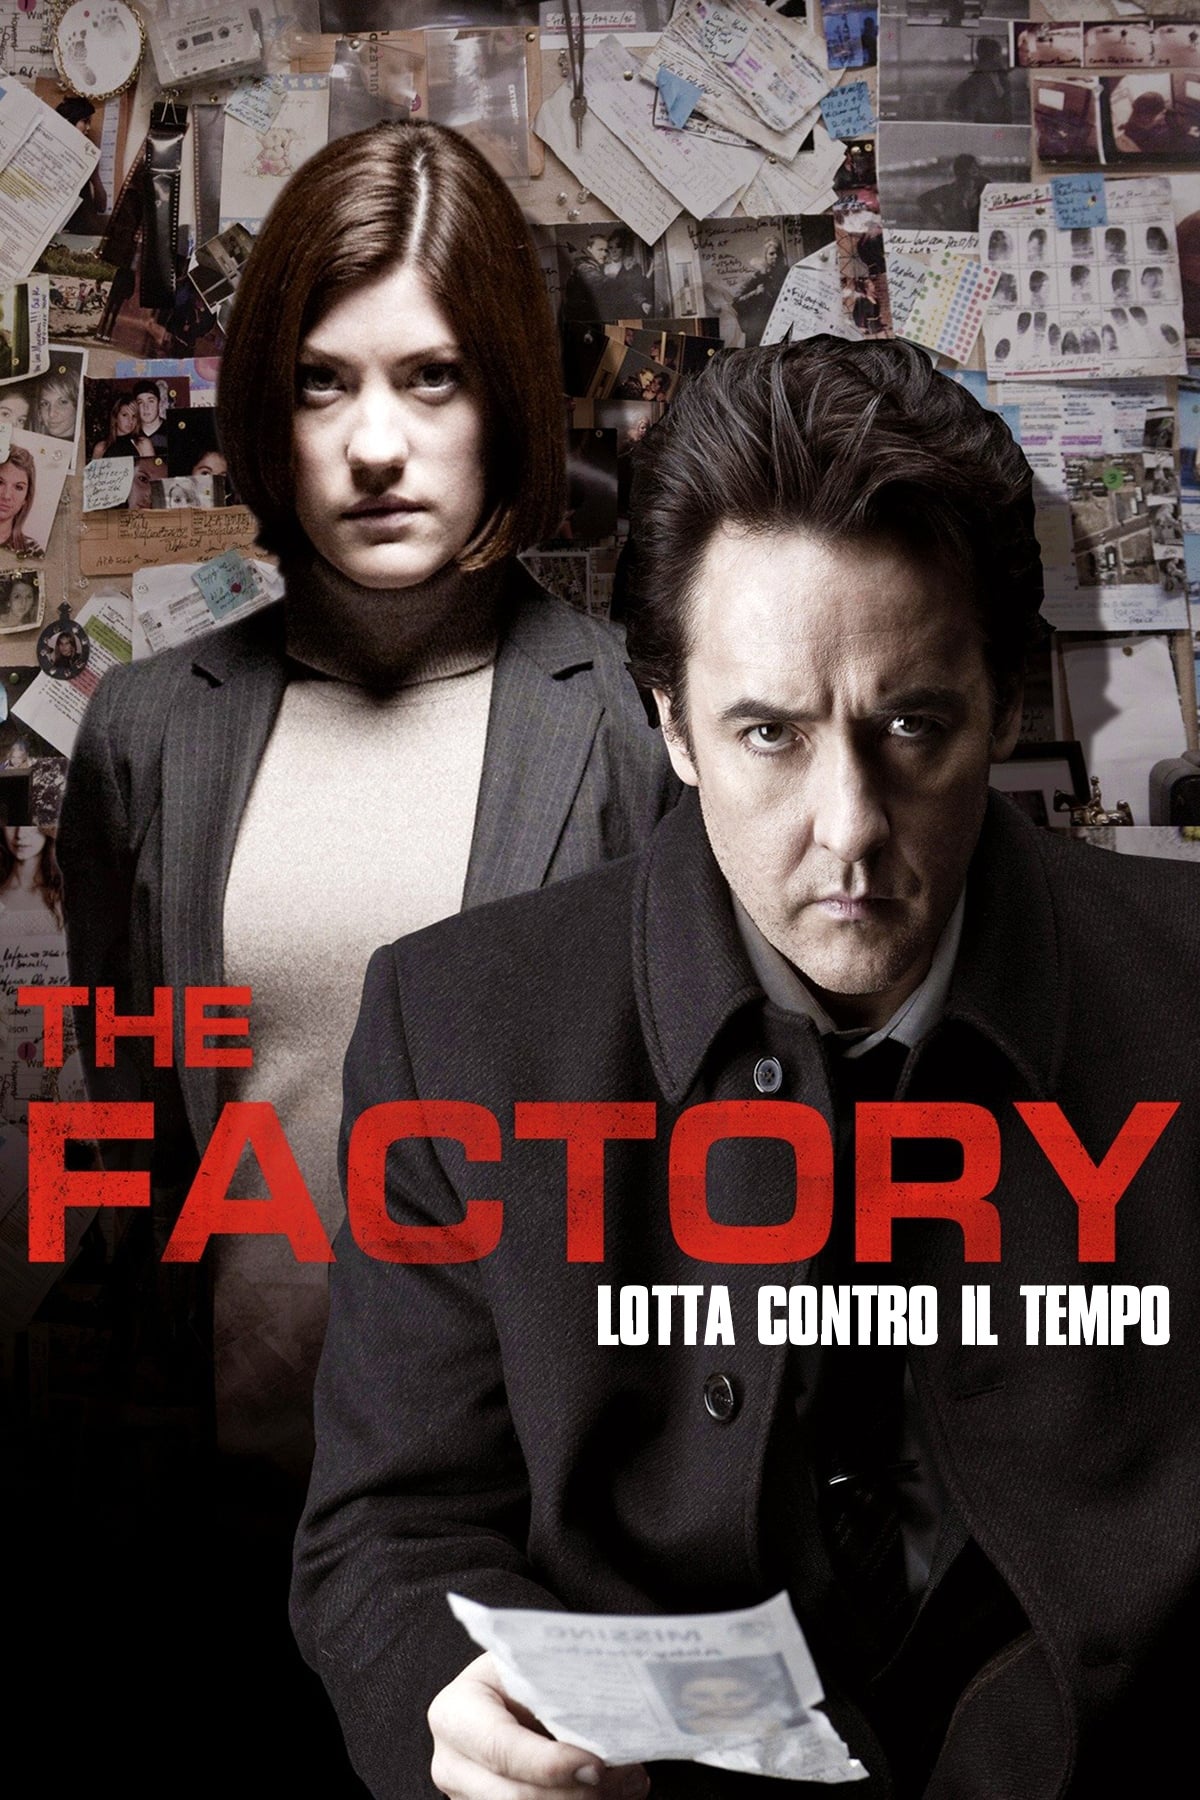 The Factory – Lotta contro il tempo [HD] (2012)